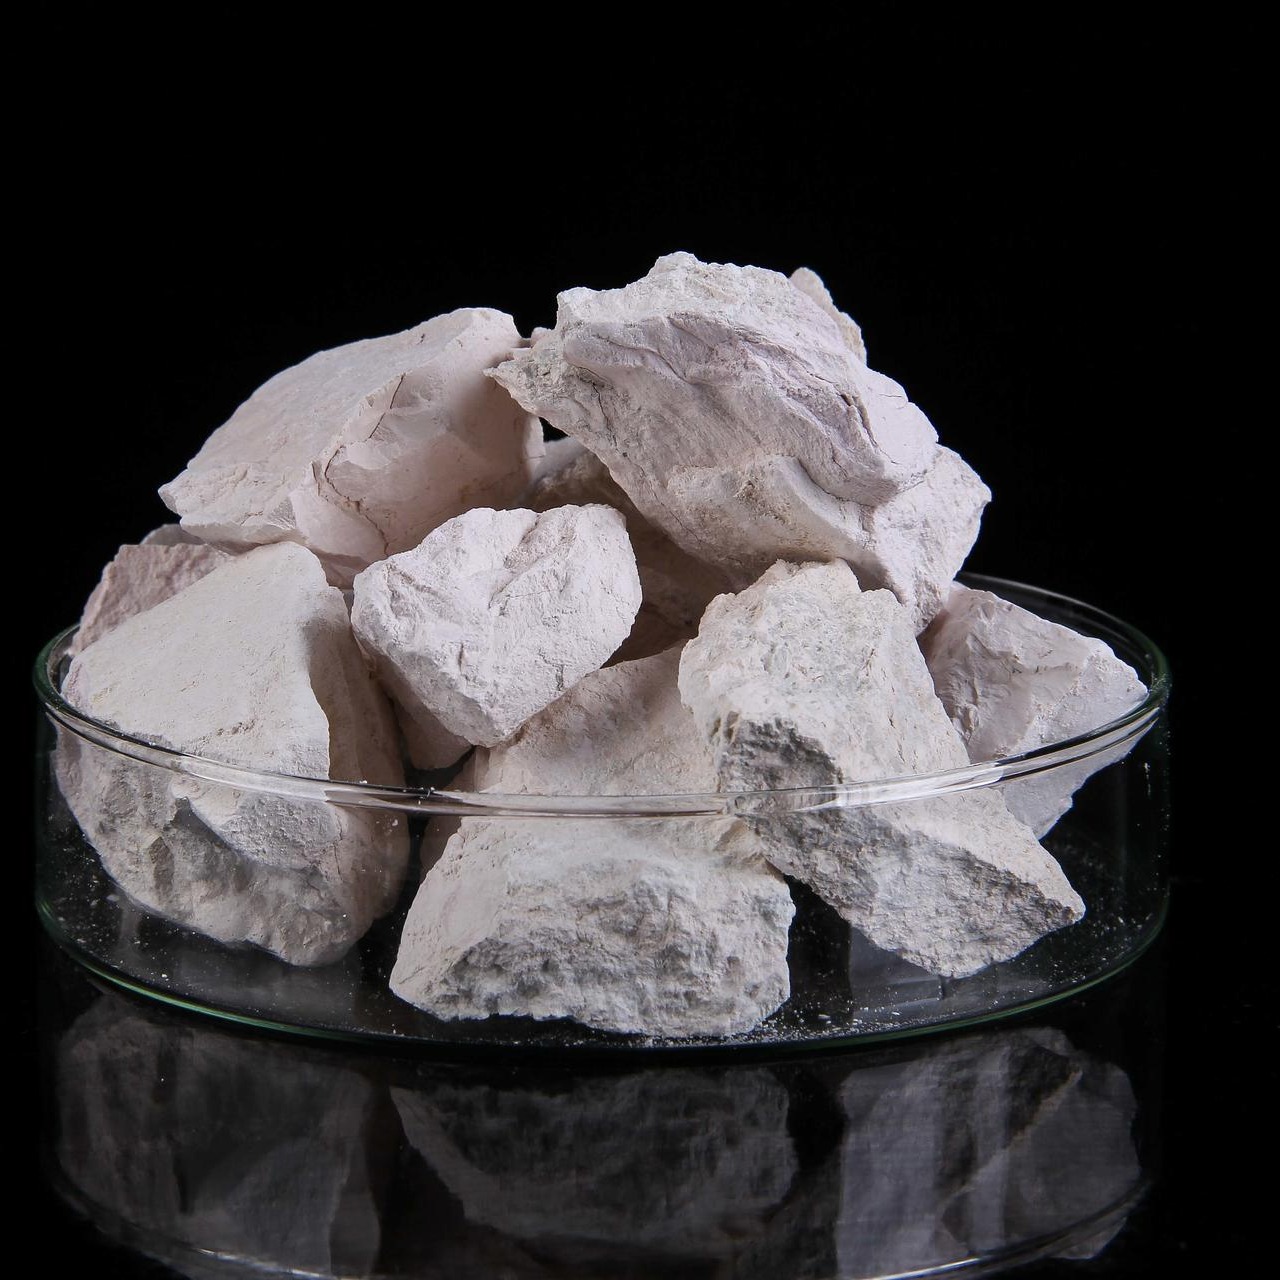 52-66% 水镁石氢氧化镁 价格优越 水镁石矿山厂家直供 煅烧水镁石 水镁石原矿6